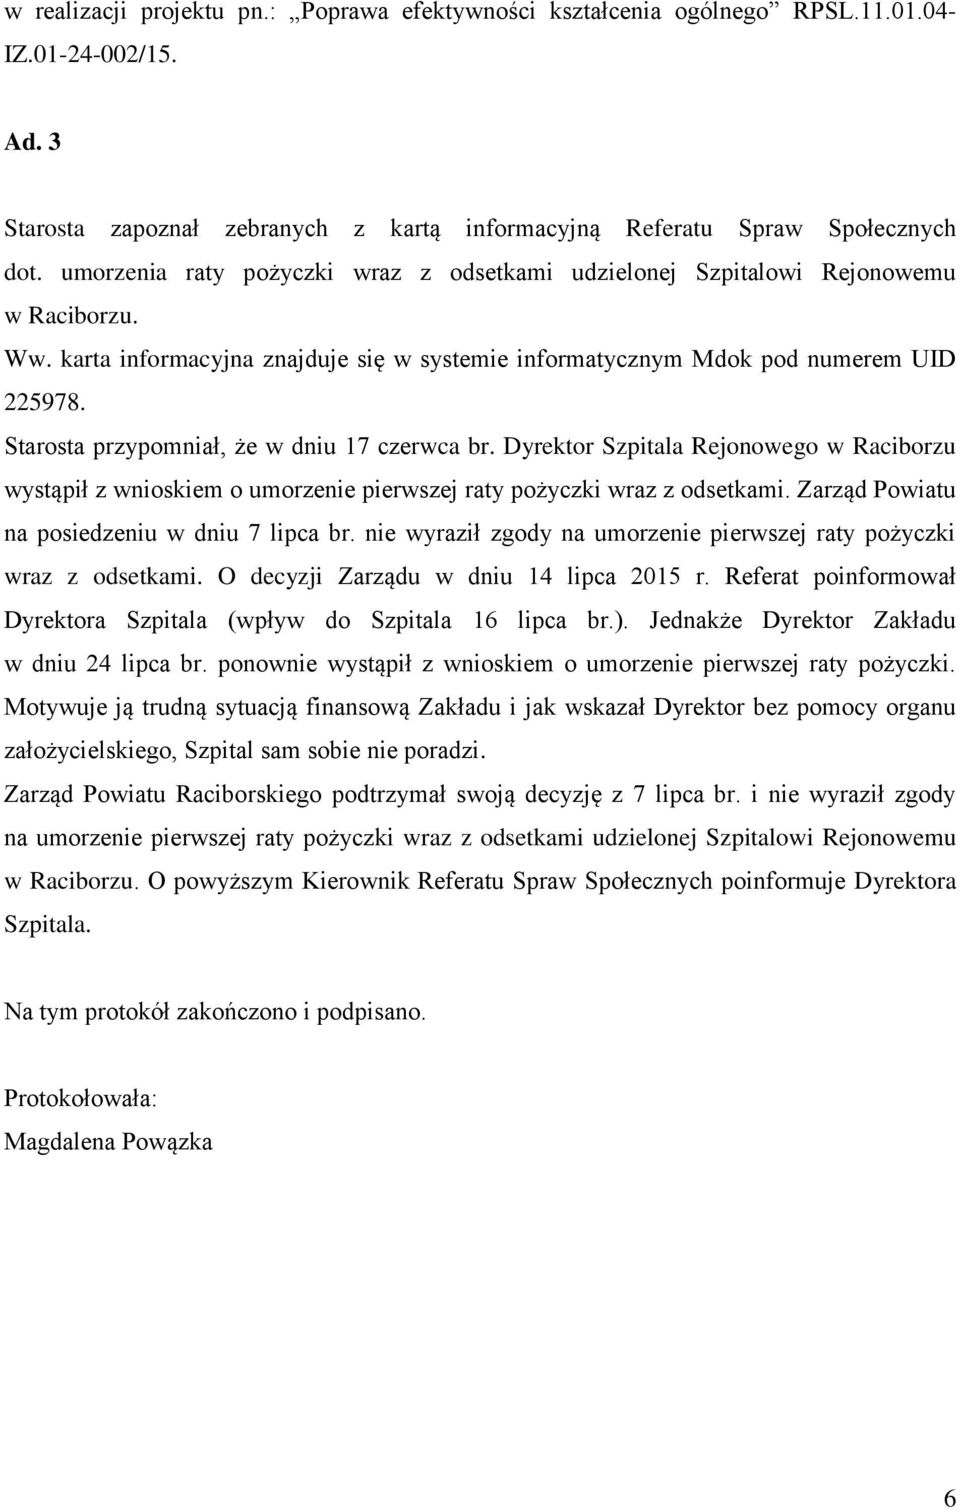 Starosta przypomniał, że w dniu 17 czerwca br. Dyrektor Szpitala Rejonowego w Raciborzu wystąpił z wnioskiem o umorzenie pierwszej raty pożyczki wraz z odsetkami.